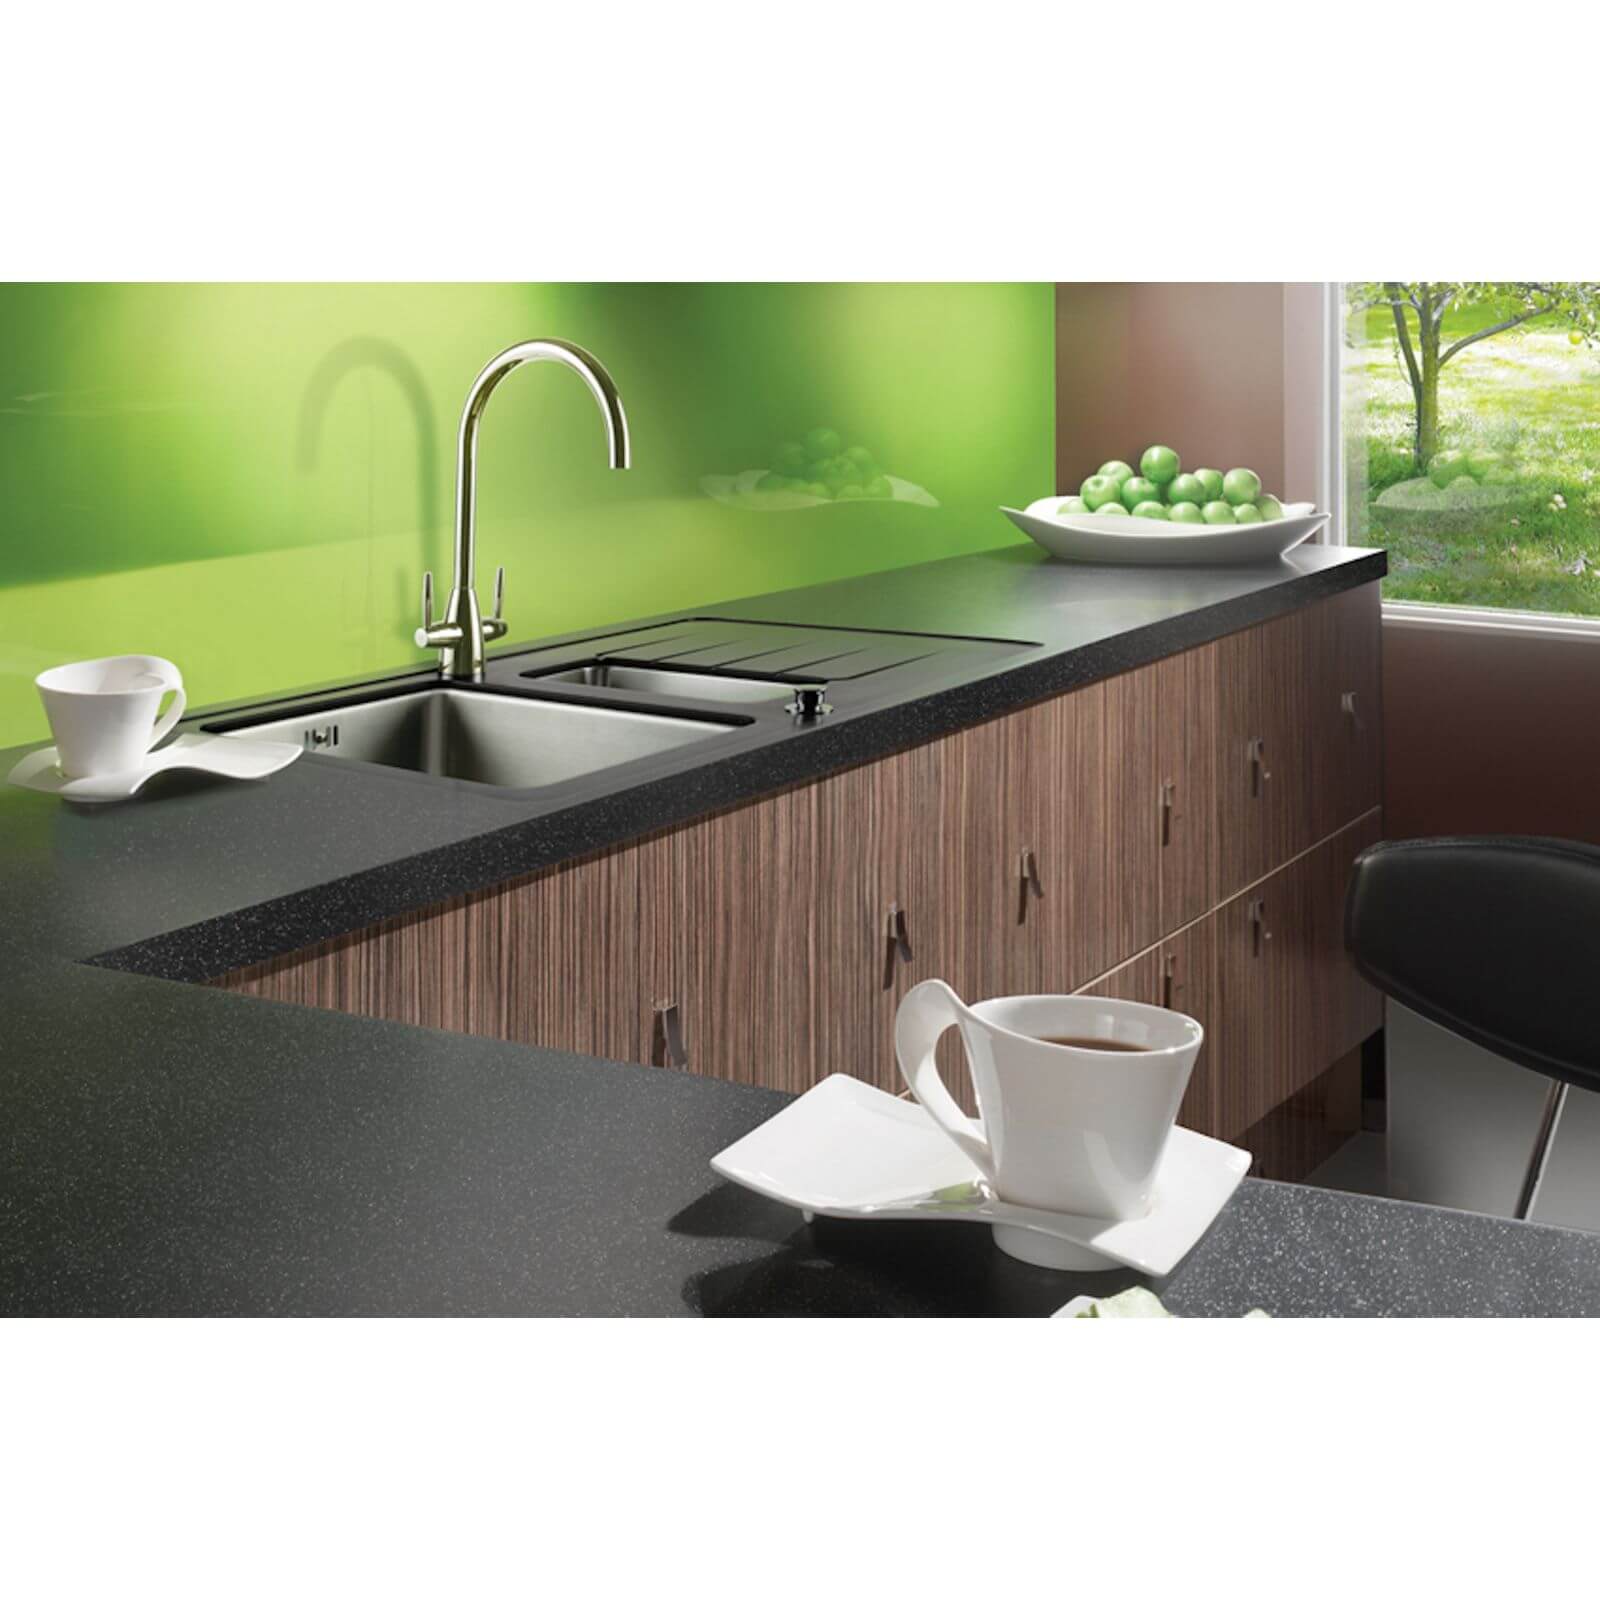 Maia Galaxy Kitchen Worktop - 360 x 60 x 4.2cm